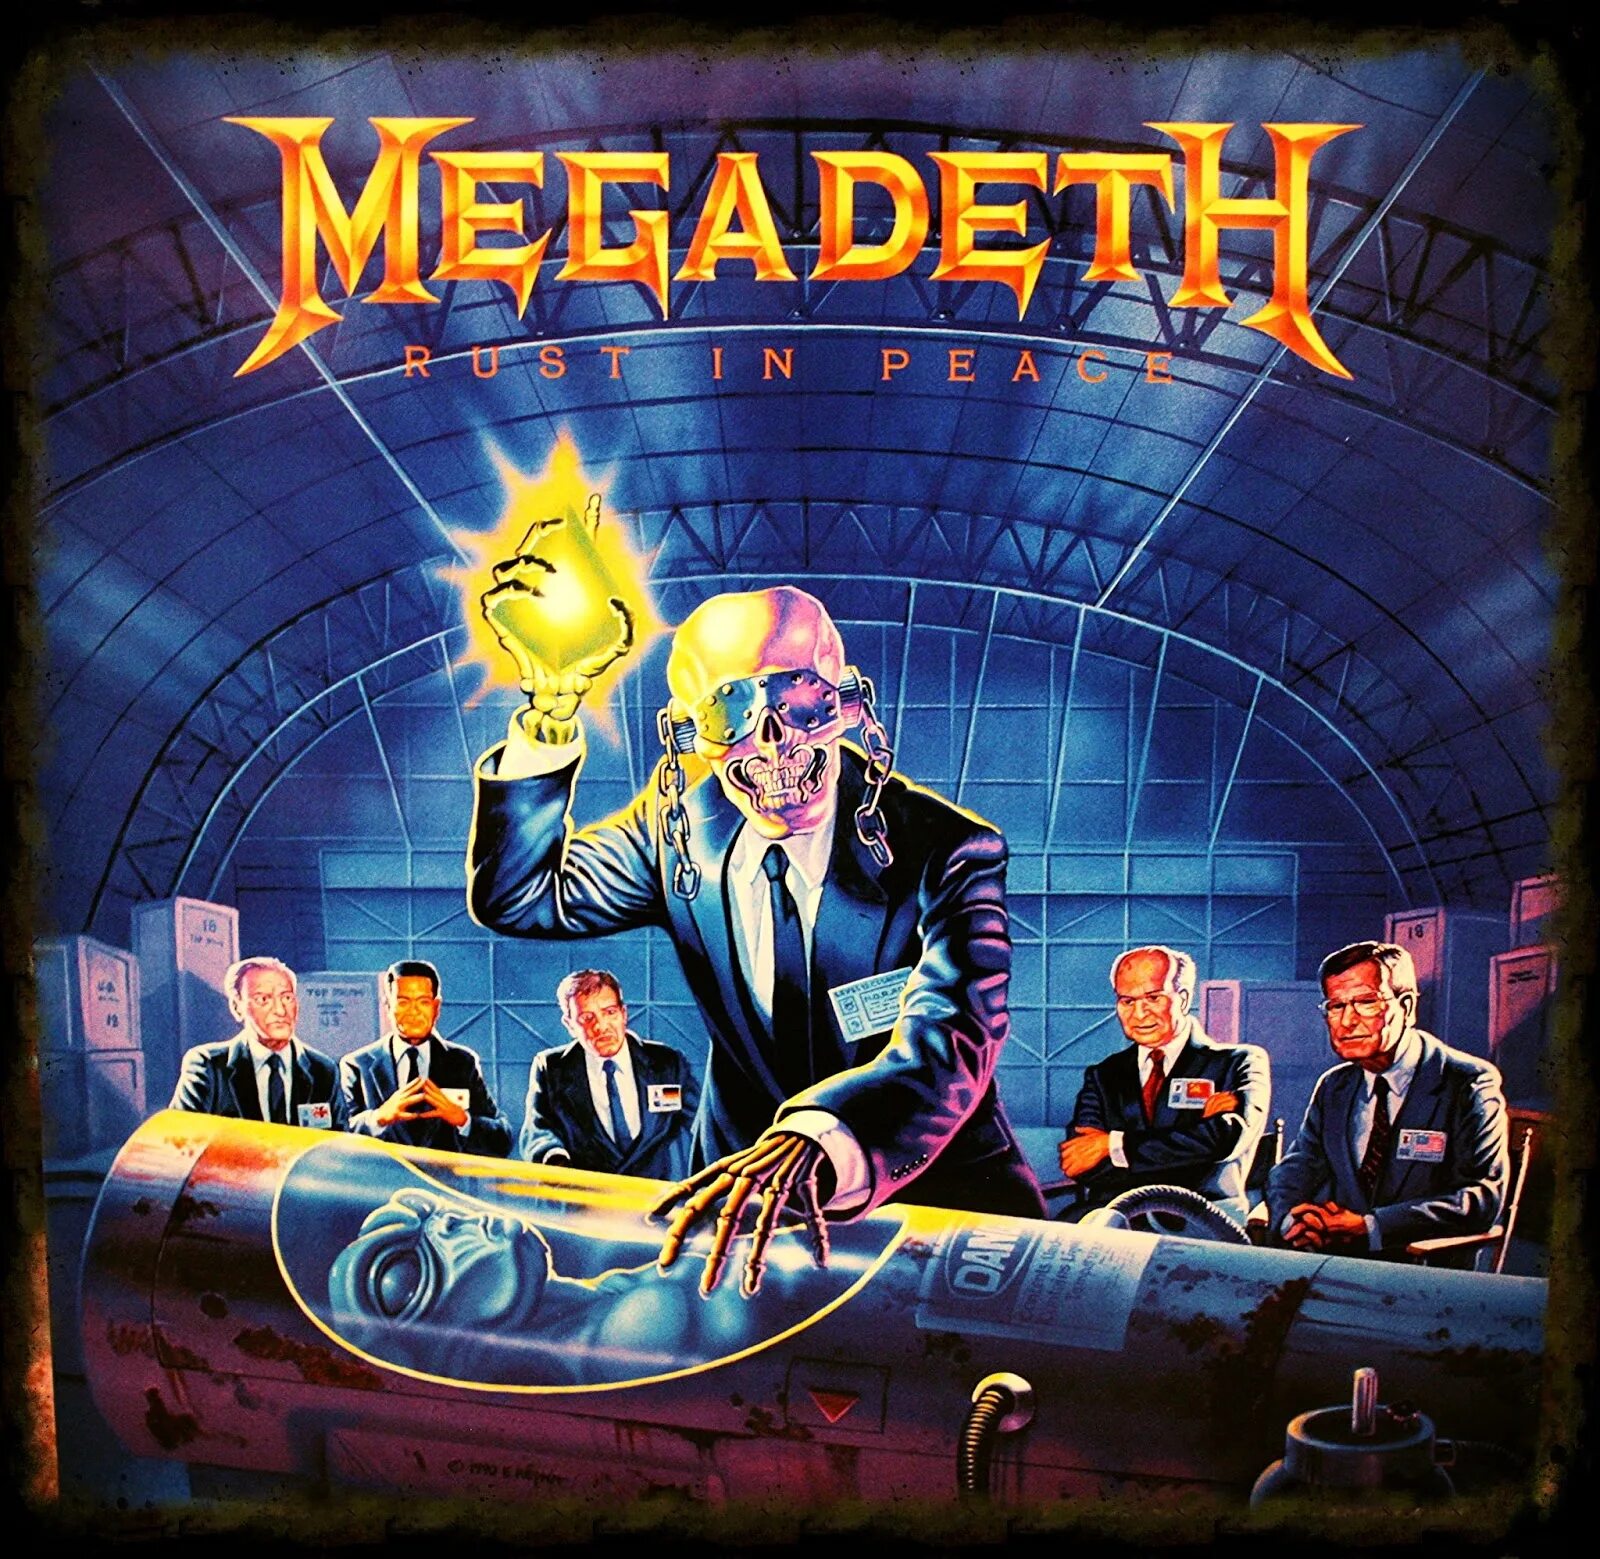 Megadeth tornado of souls. Megadeth обложки. Группа Megadeth обложки. Megadeth Rust in Peace обложка. Megadeth Peace sells обложка.